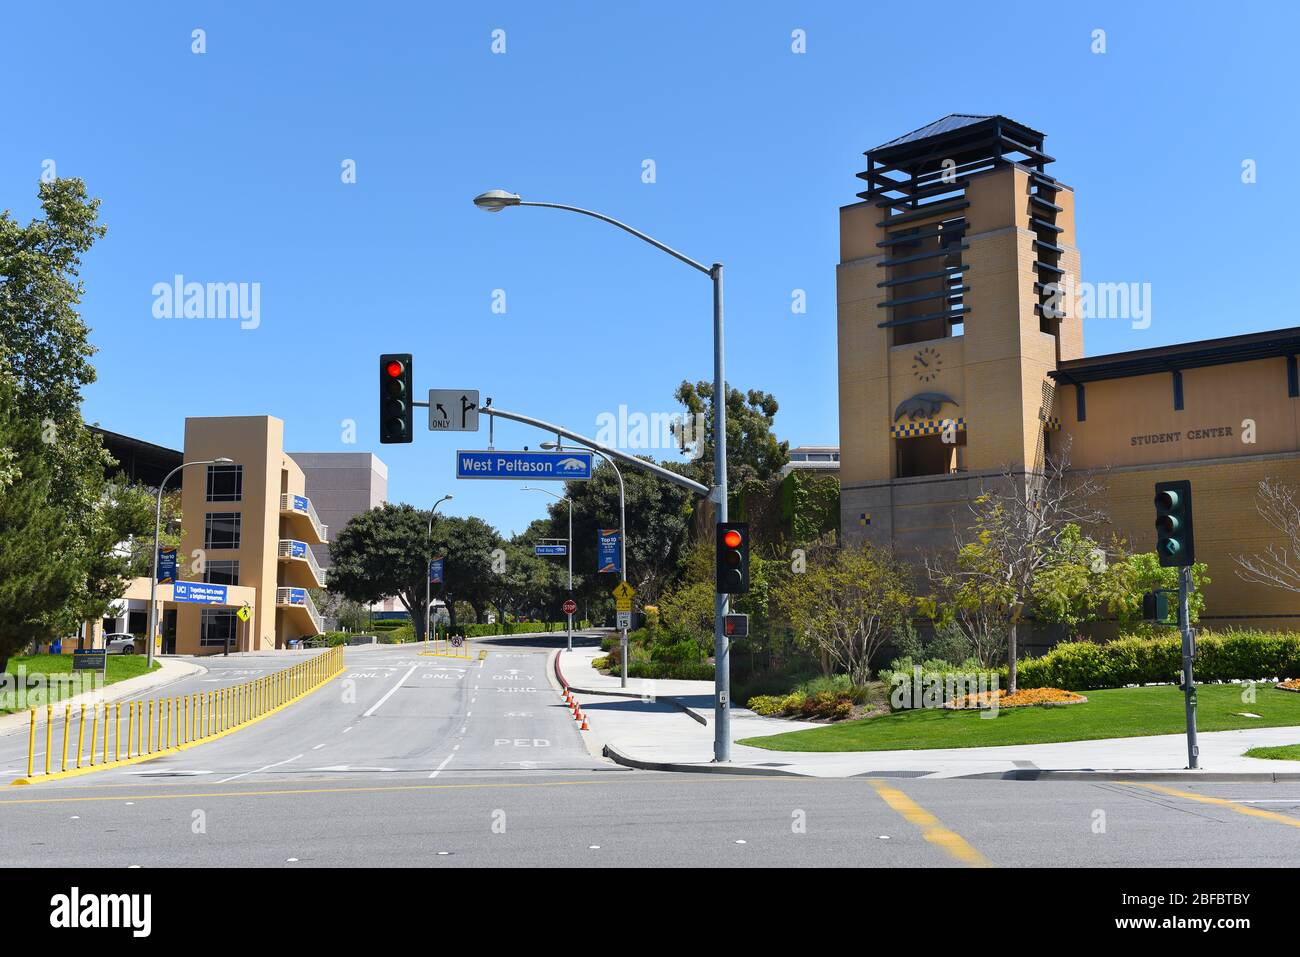 IRVINE, CALIFORNIE - 16 AVRIL 2020: Garage de stationnement et centre étudiant sur le campus de l'Université de Californie Irvine, UCI, à l'ouest de Peltason et Banque D'Images